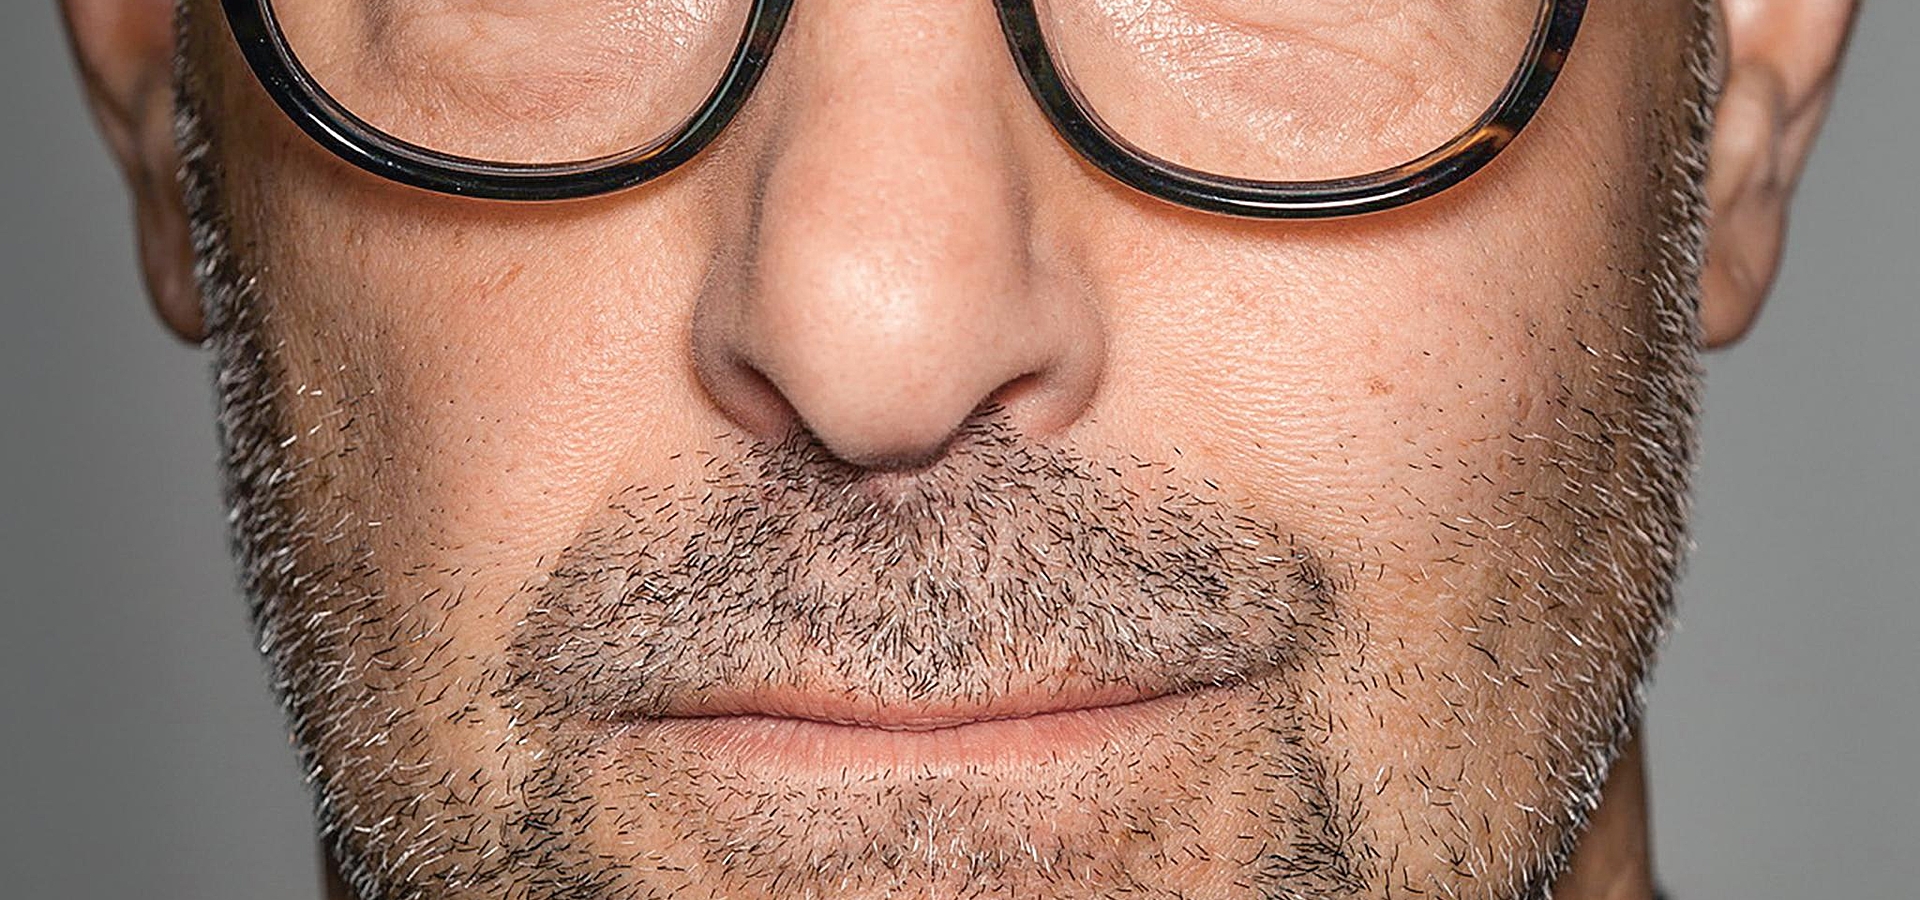 Schauspieler mit brille und amerikanischer glatze ᐅ AMERIKANISCHER